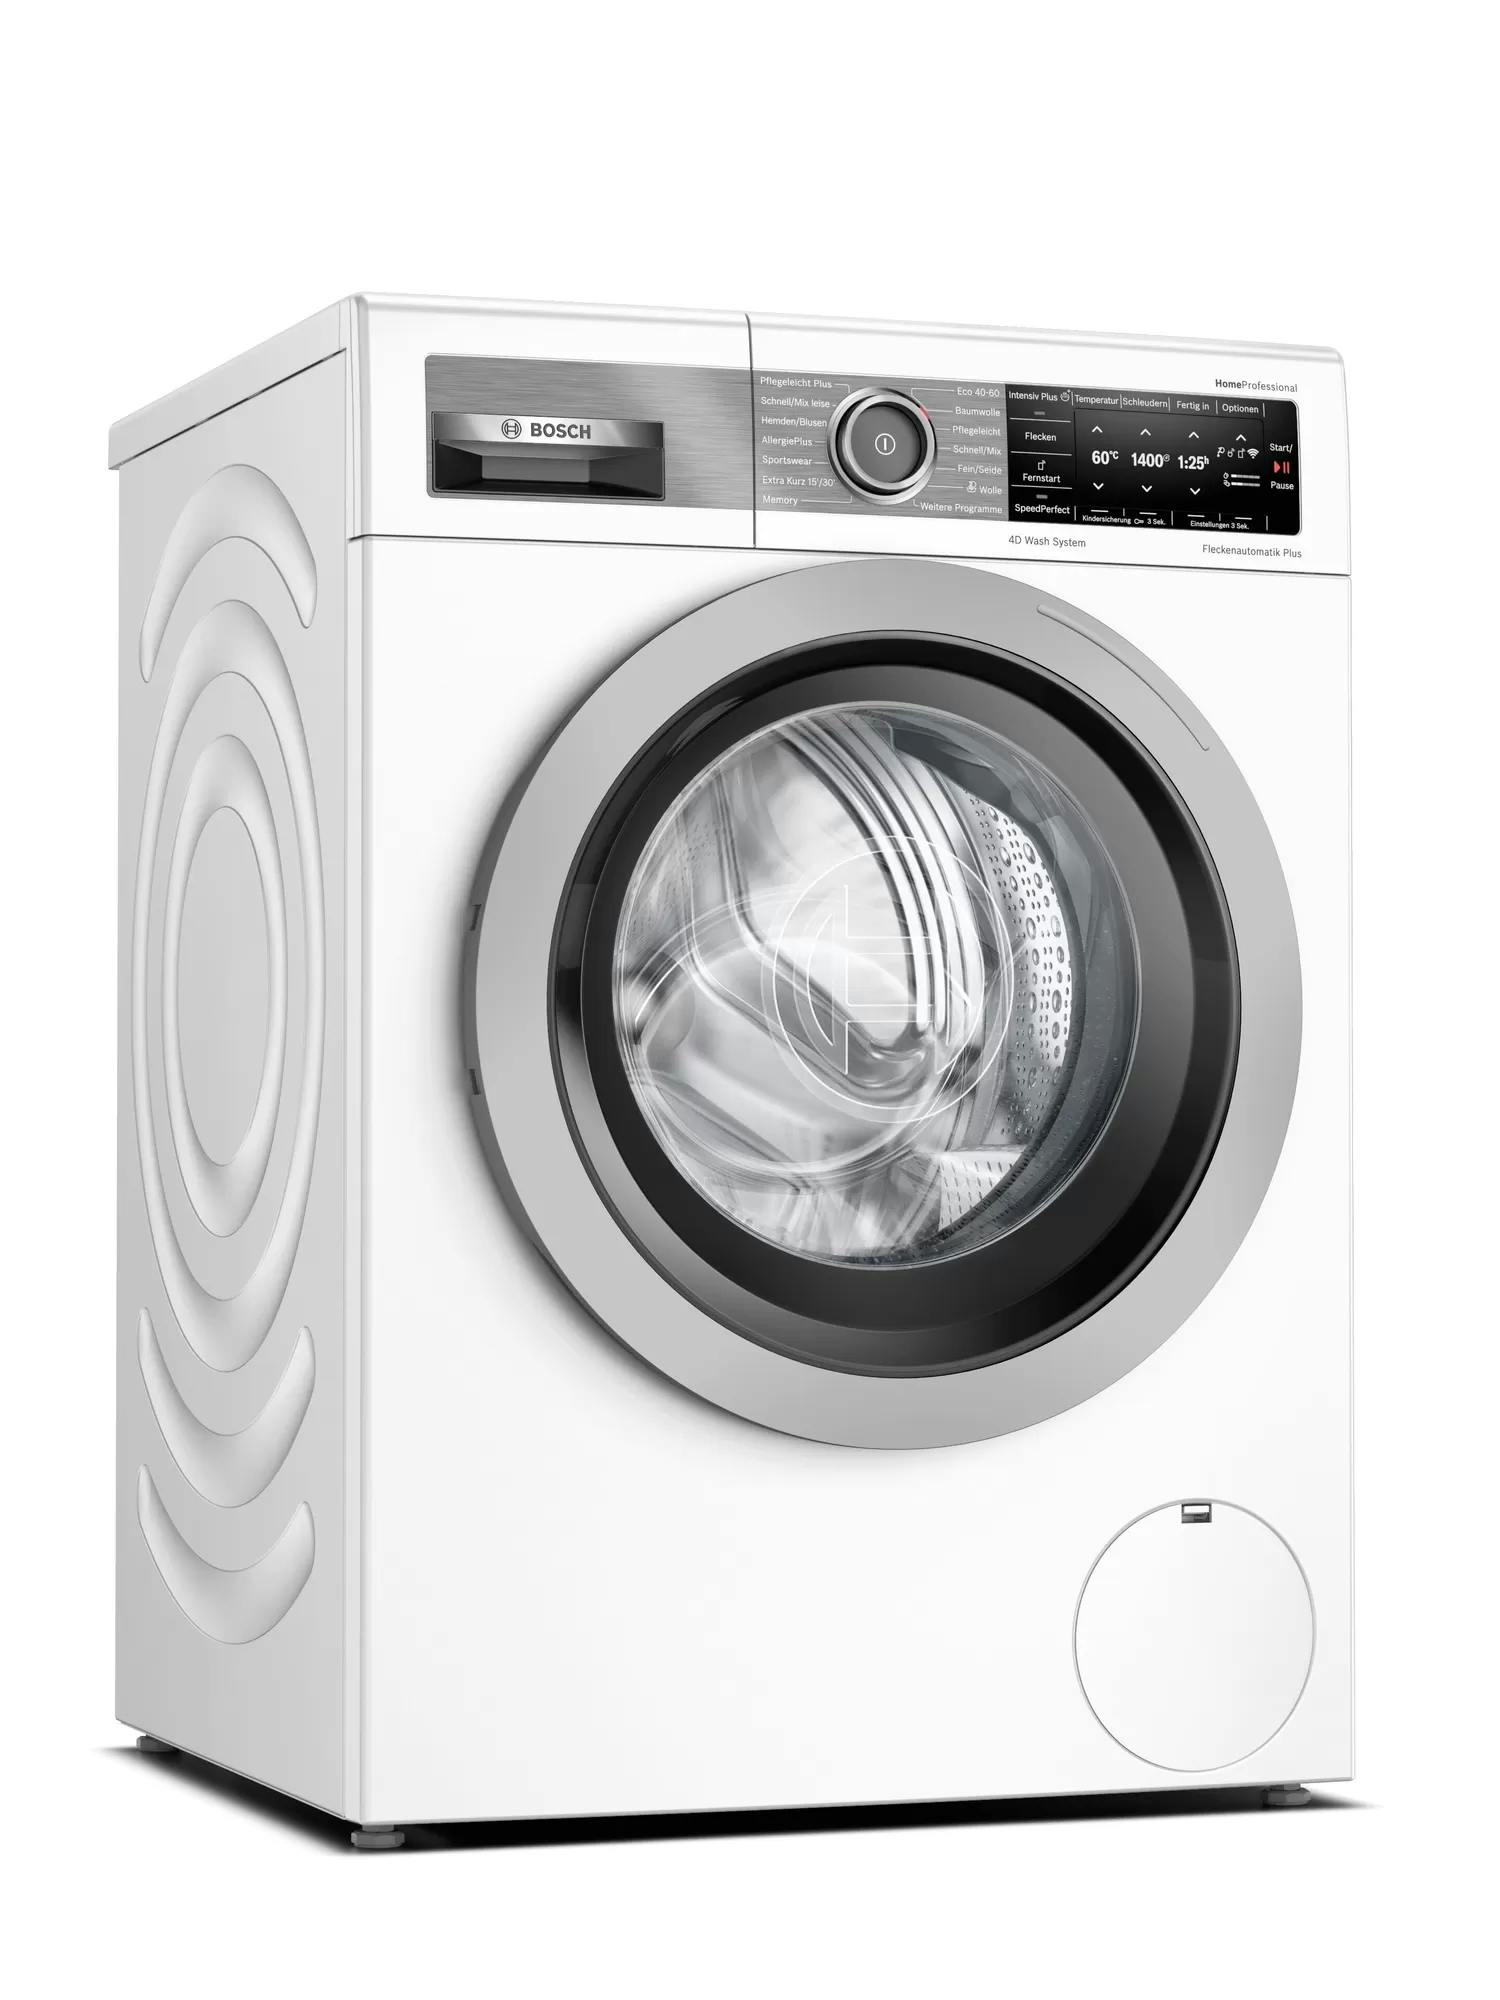 Bosch A WAV28G43 METRO Marktplatz RPM Frontlader Weiß kg Waschmaschine 9 HomeProfessional | 1400